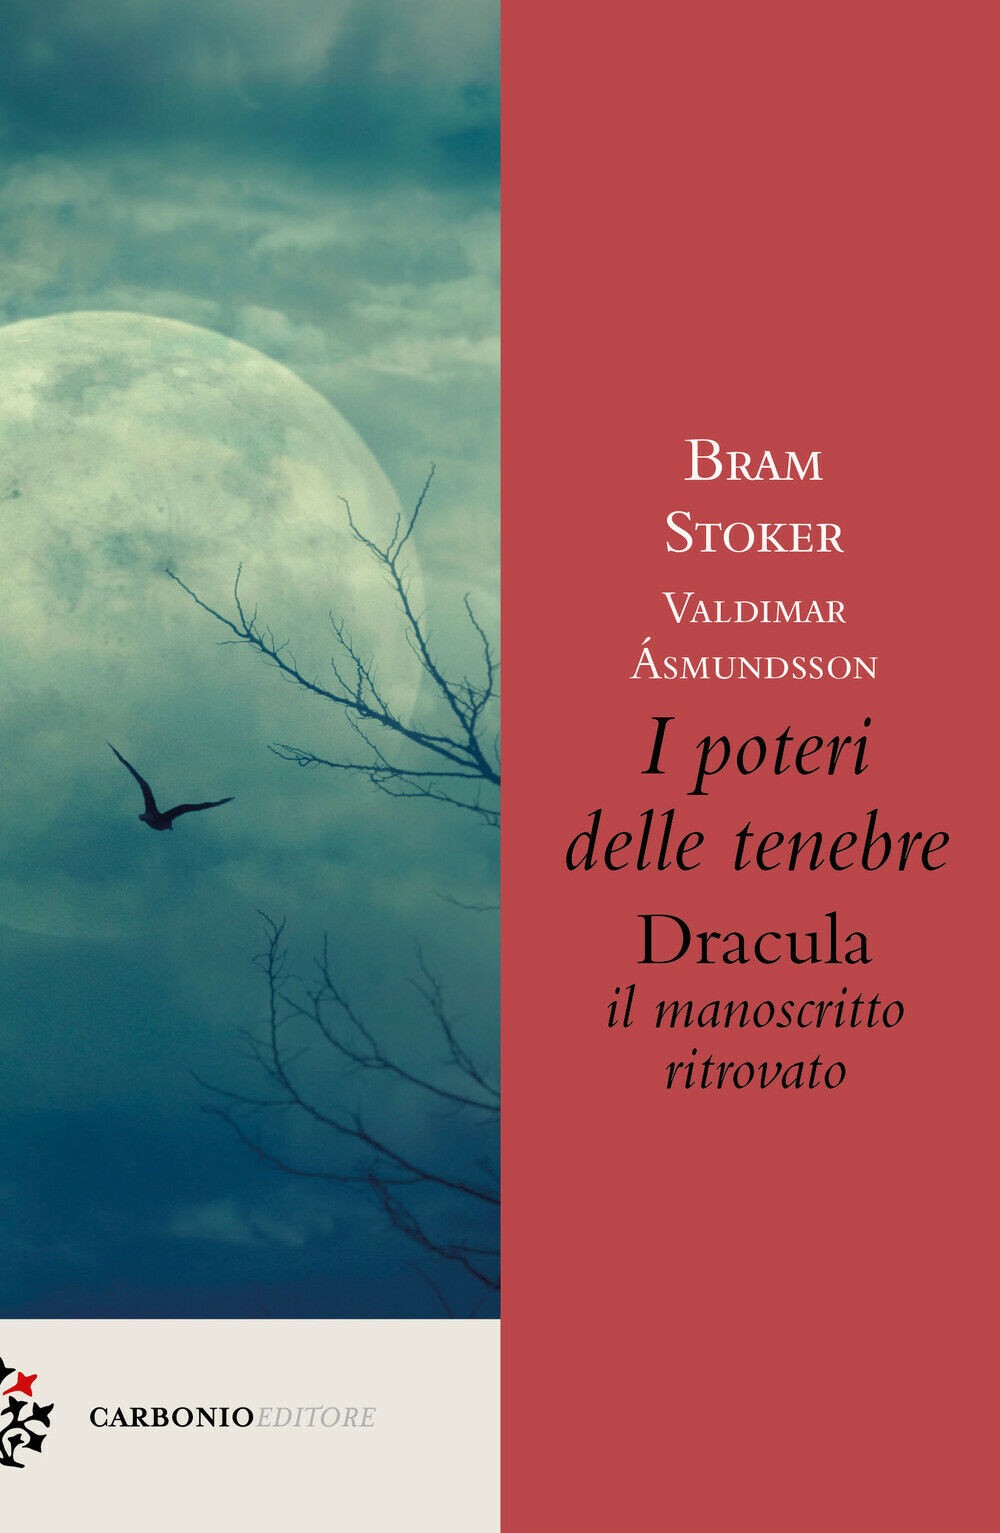 “I Poteri delle Tenebre” il nuovo Dracula di Bram Stoker